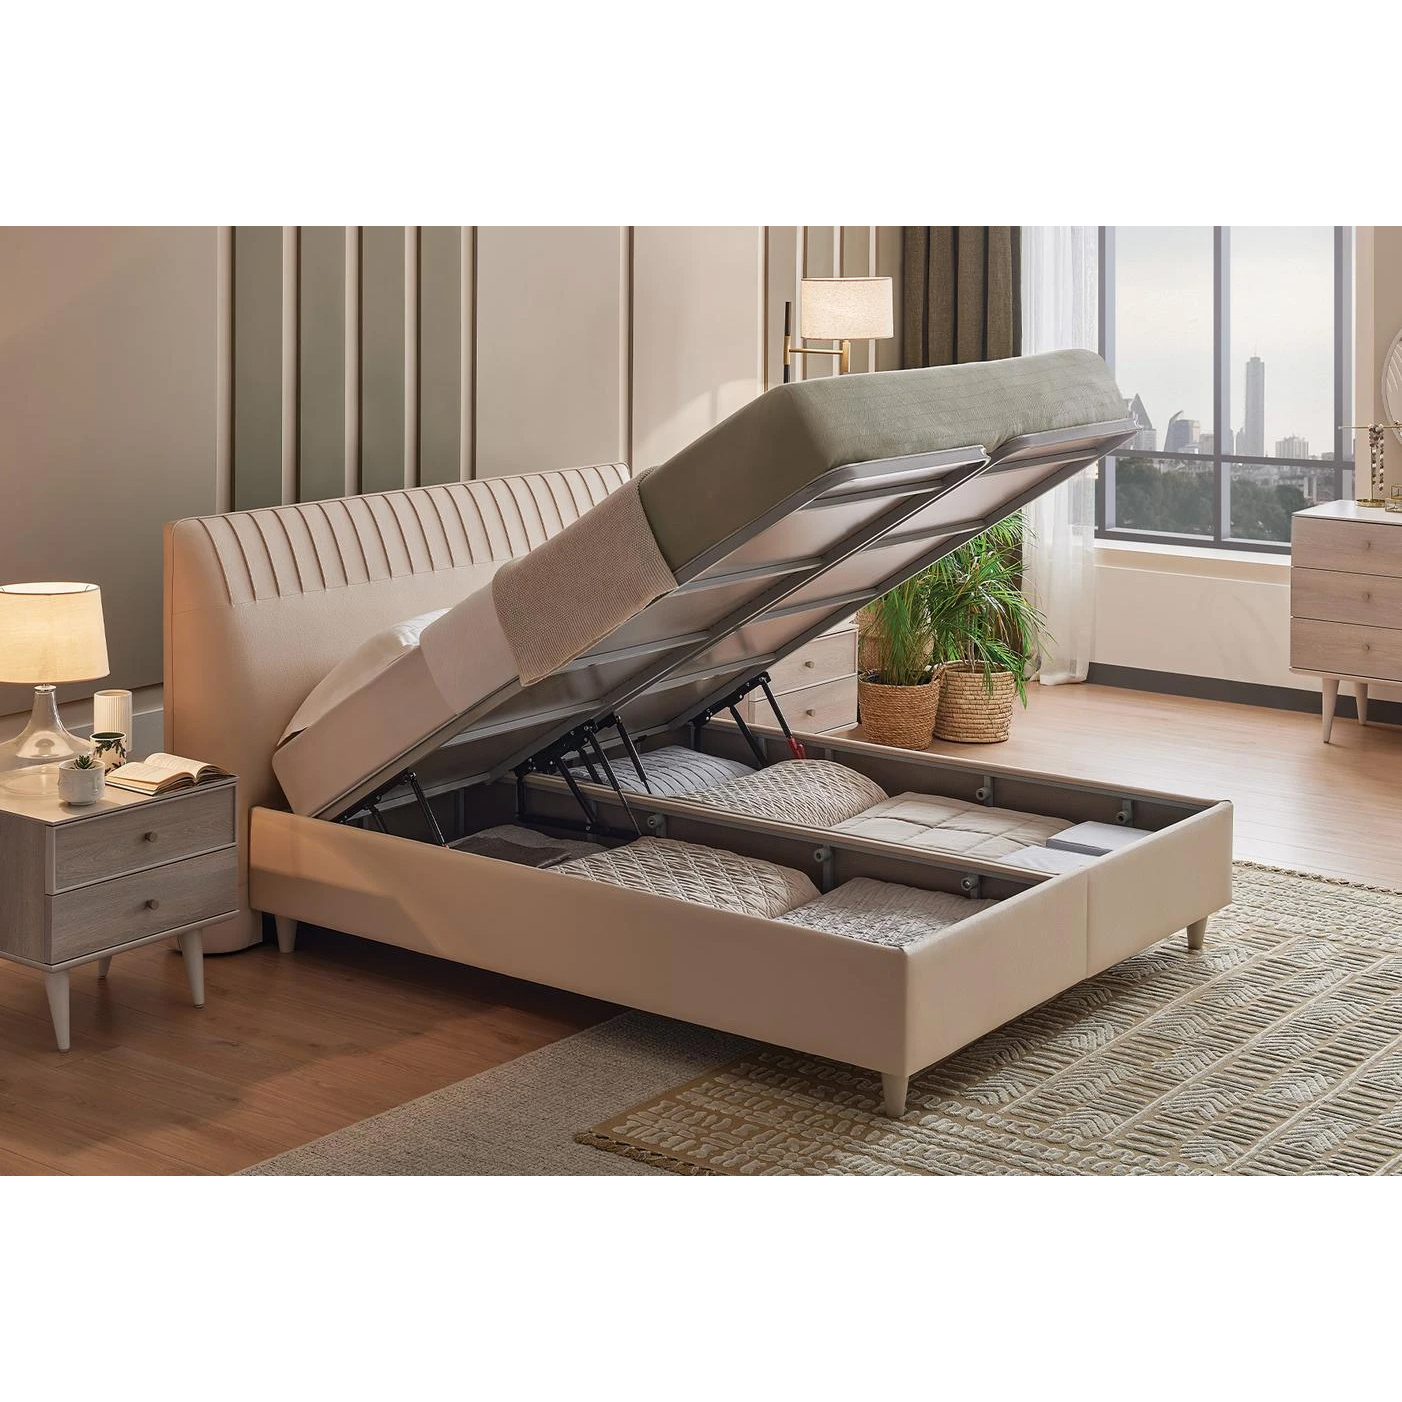 Кровать Enza Home Basel, 180х200 см, с подъемным механизмом, кремовый 3001-K1-52102 (EH59536+EH59555)EH59536+EH59555